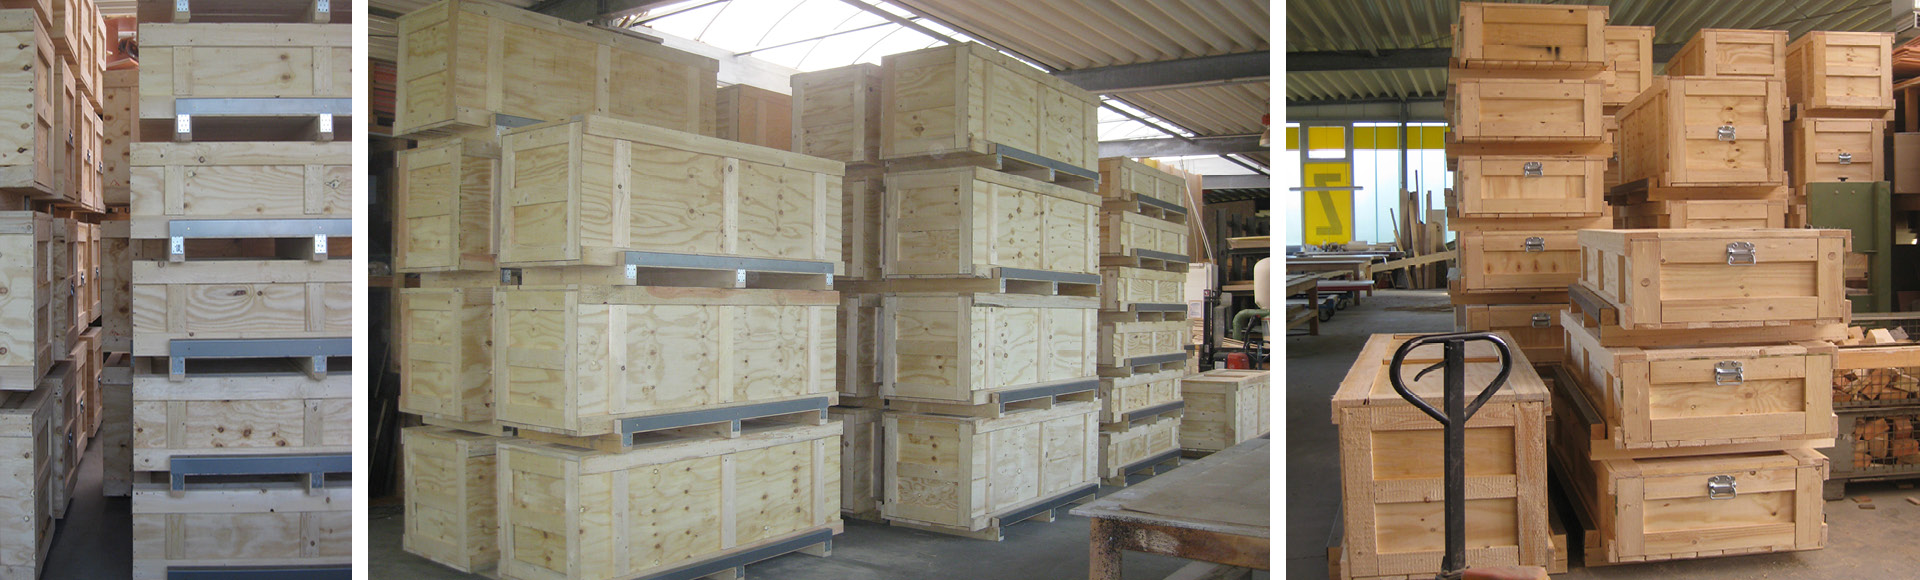 Exportverpackungen vom Fachhändler Holz Penschke aus Bochum-Wattenscheid